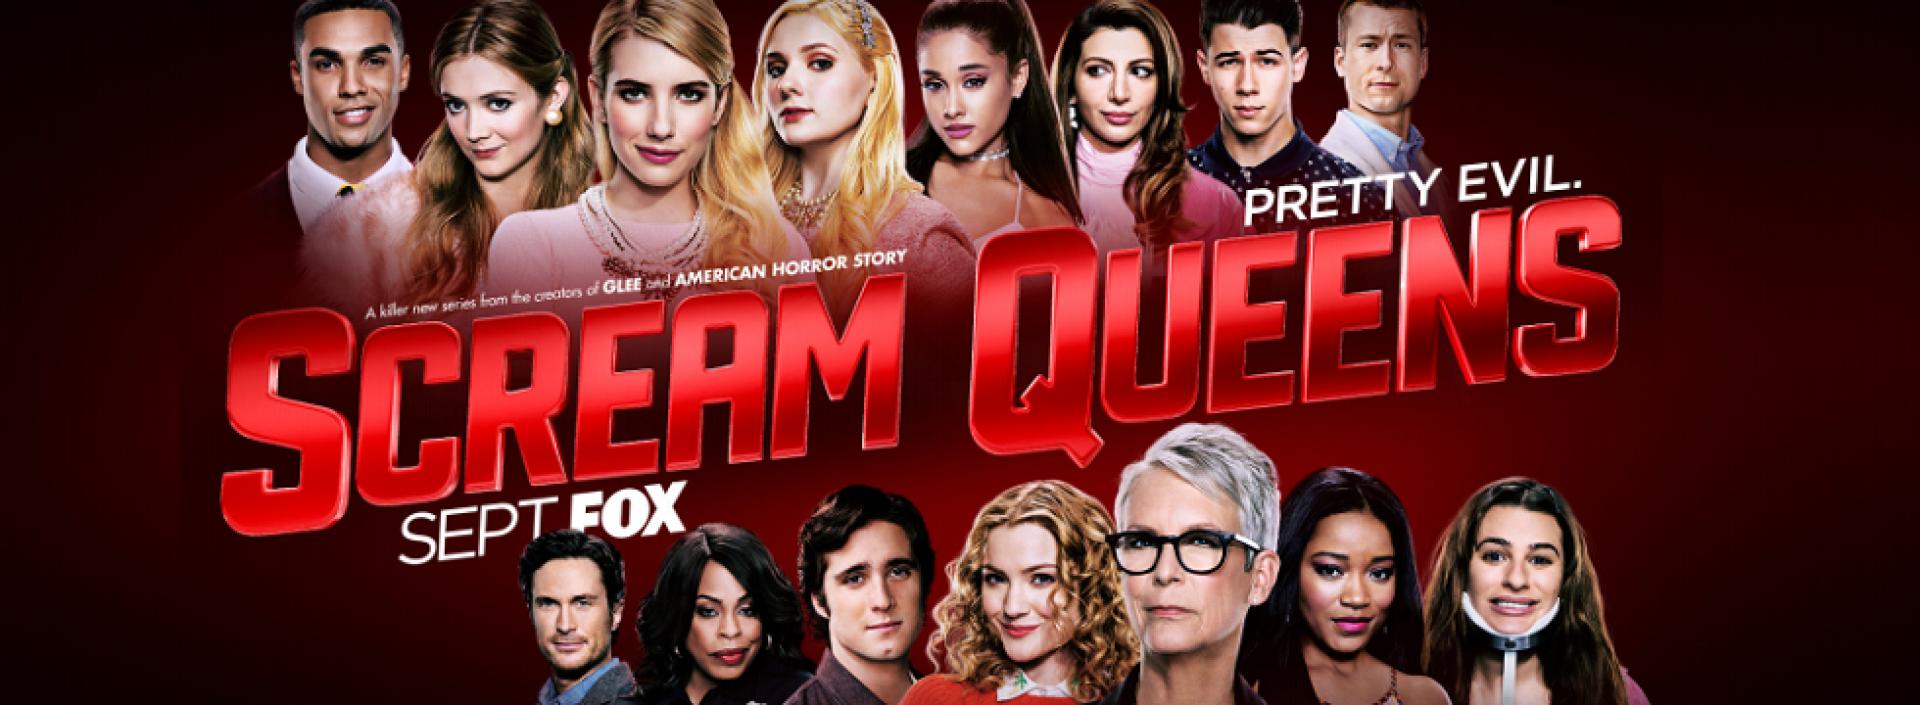 Scream Queens 1x02